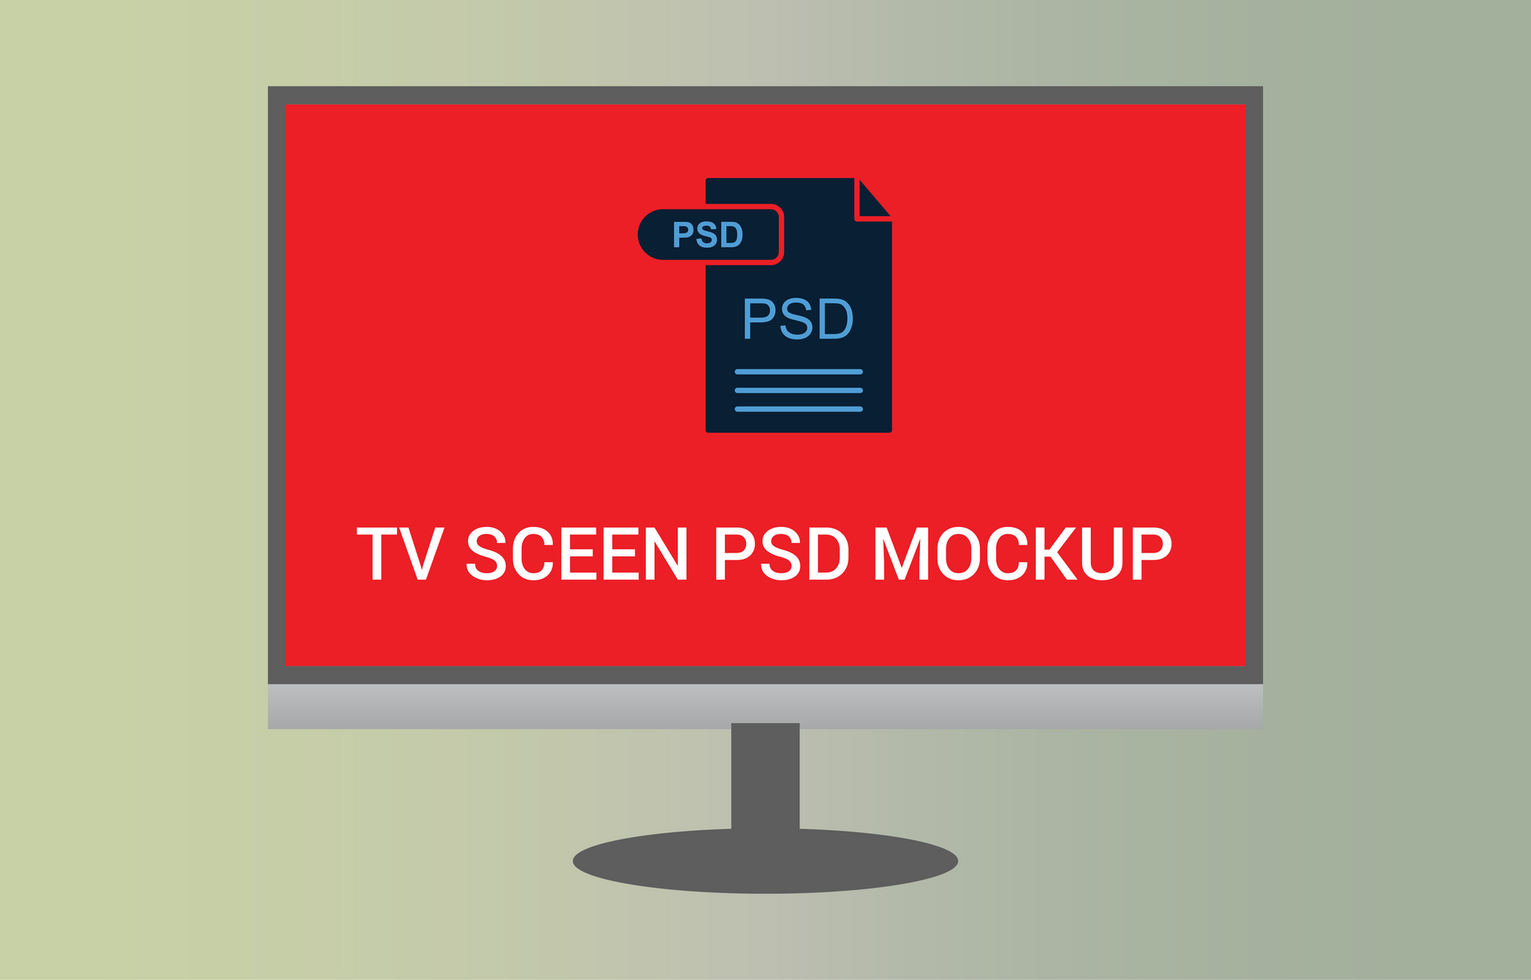 Computer monitor 8k ultra HD PSDS mockup File